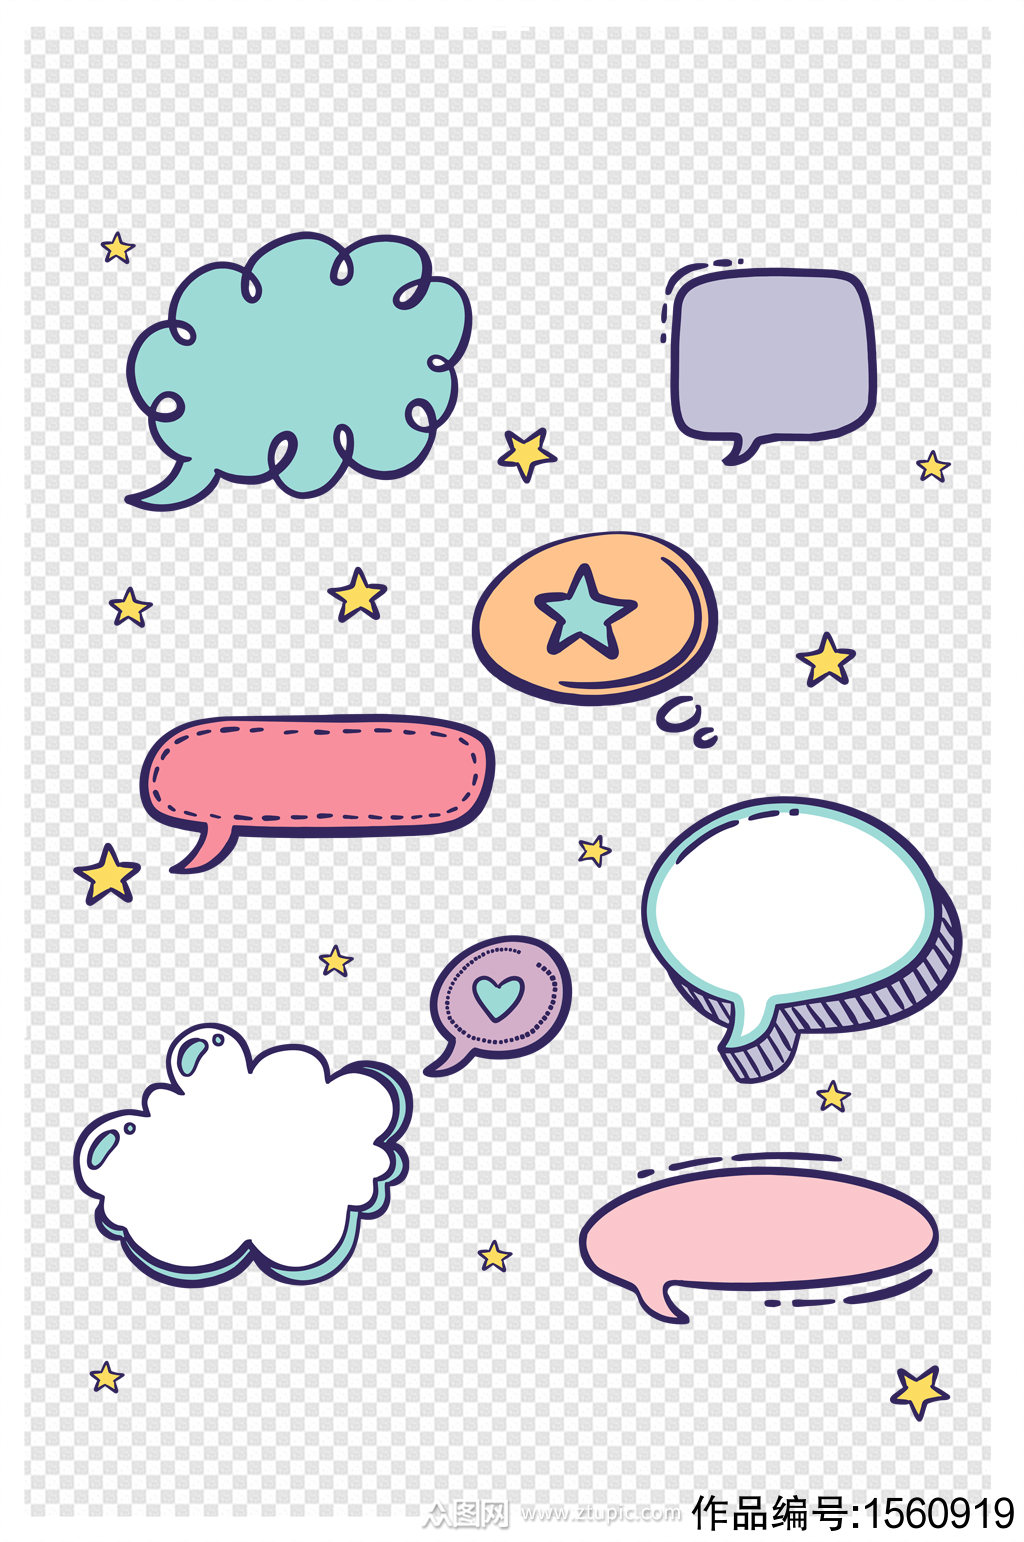 可爱清新手绘纹理气泡对话框边框元素素材